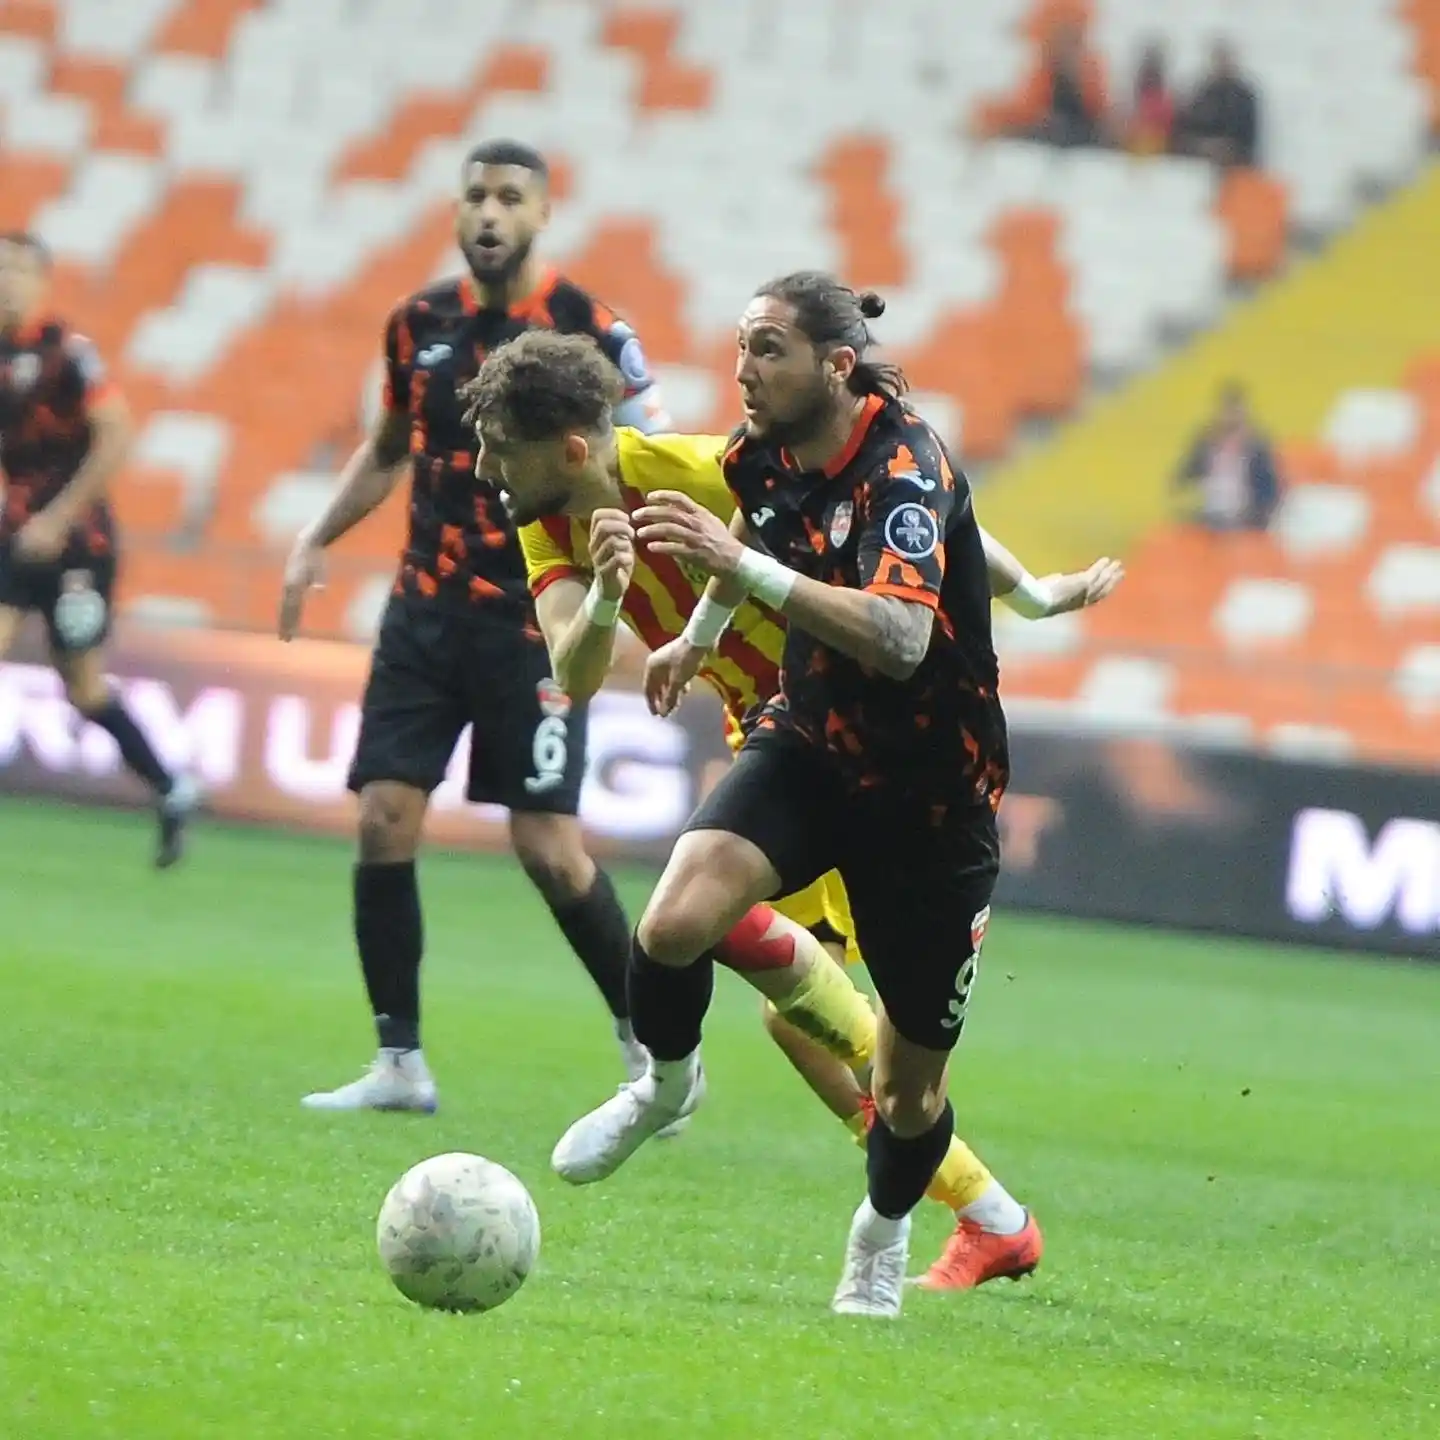 Spor Toto 1. Lig: Adanaspor: 2 - Yeni Malatyaspor: 2
